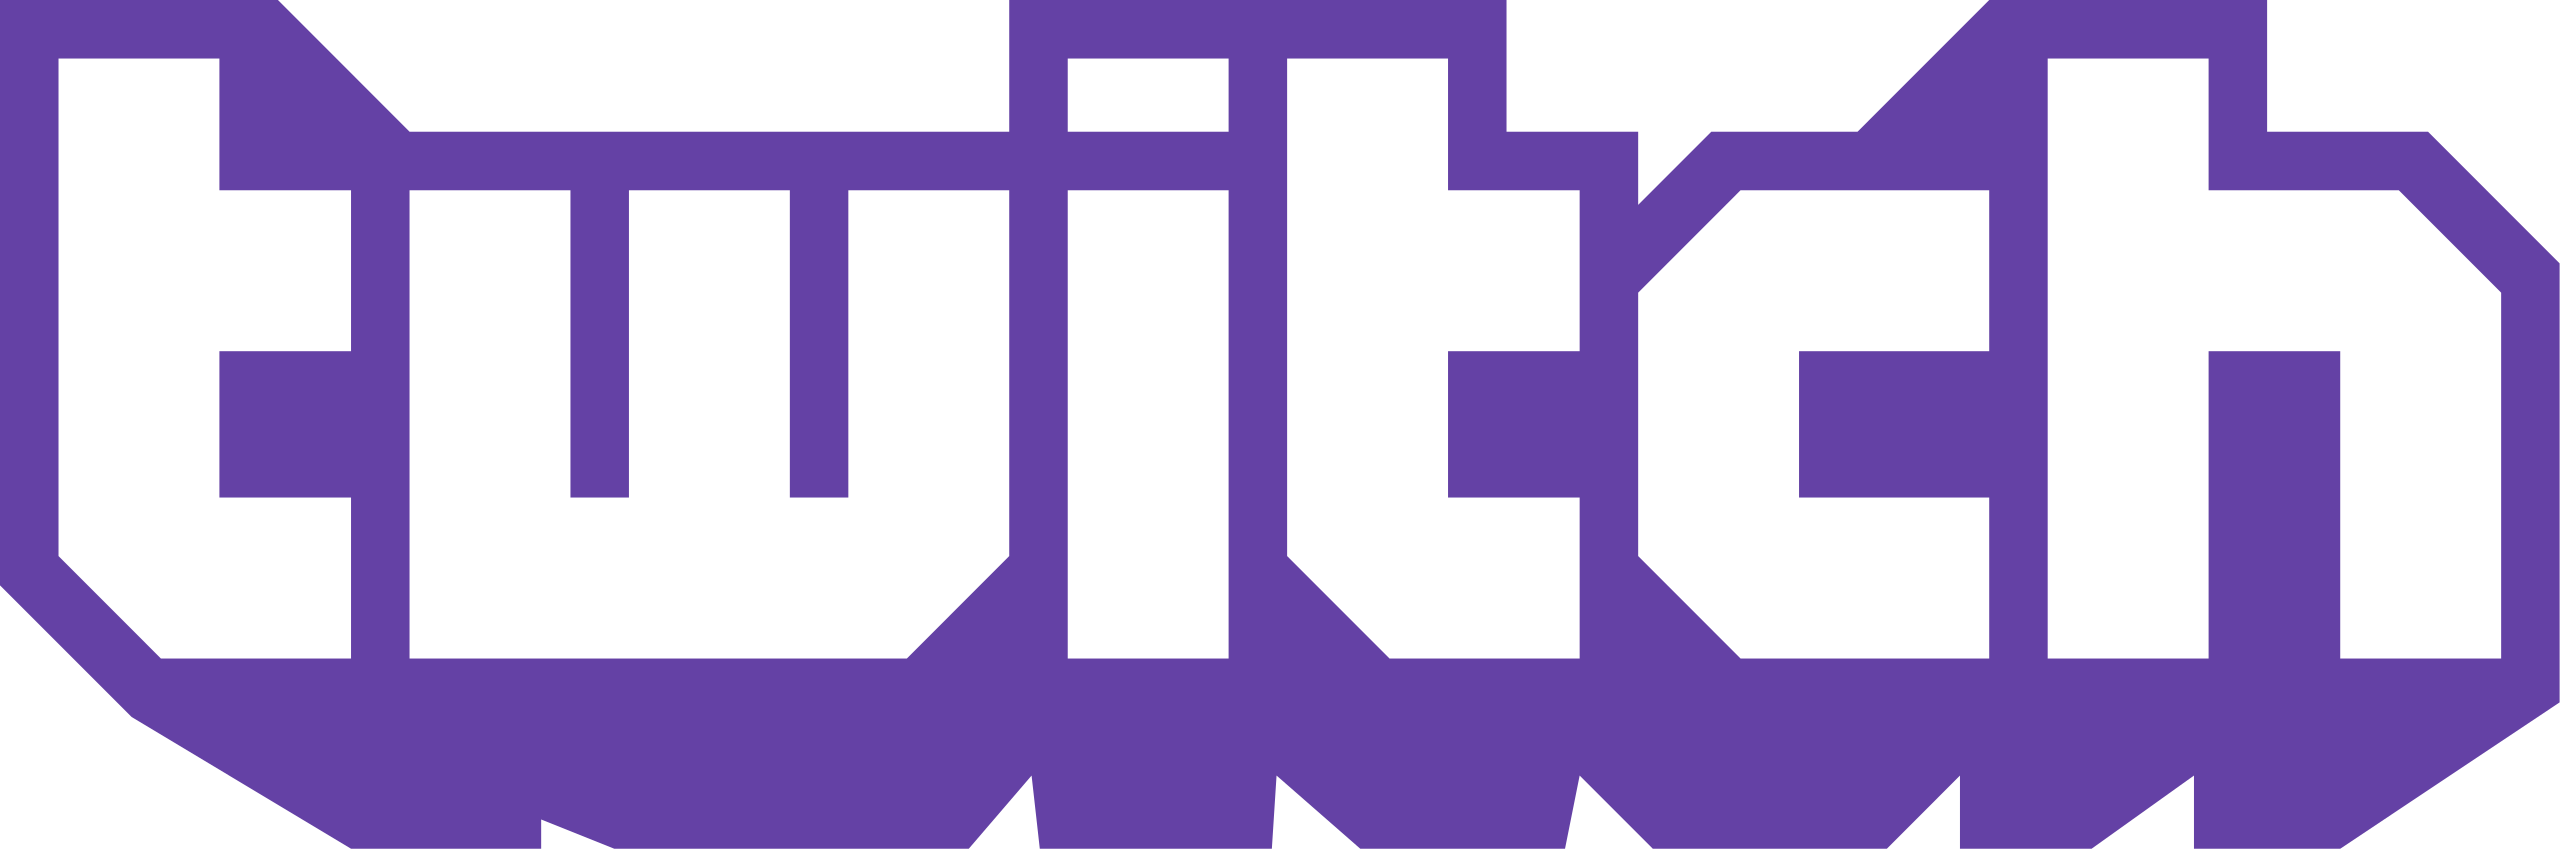 Logo Twitch | Divulgação 